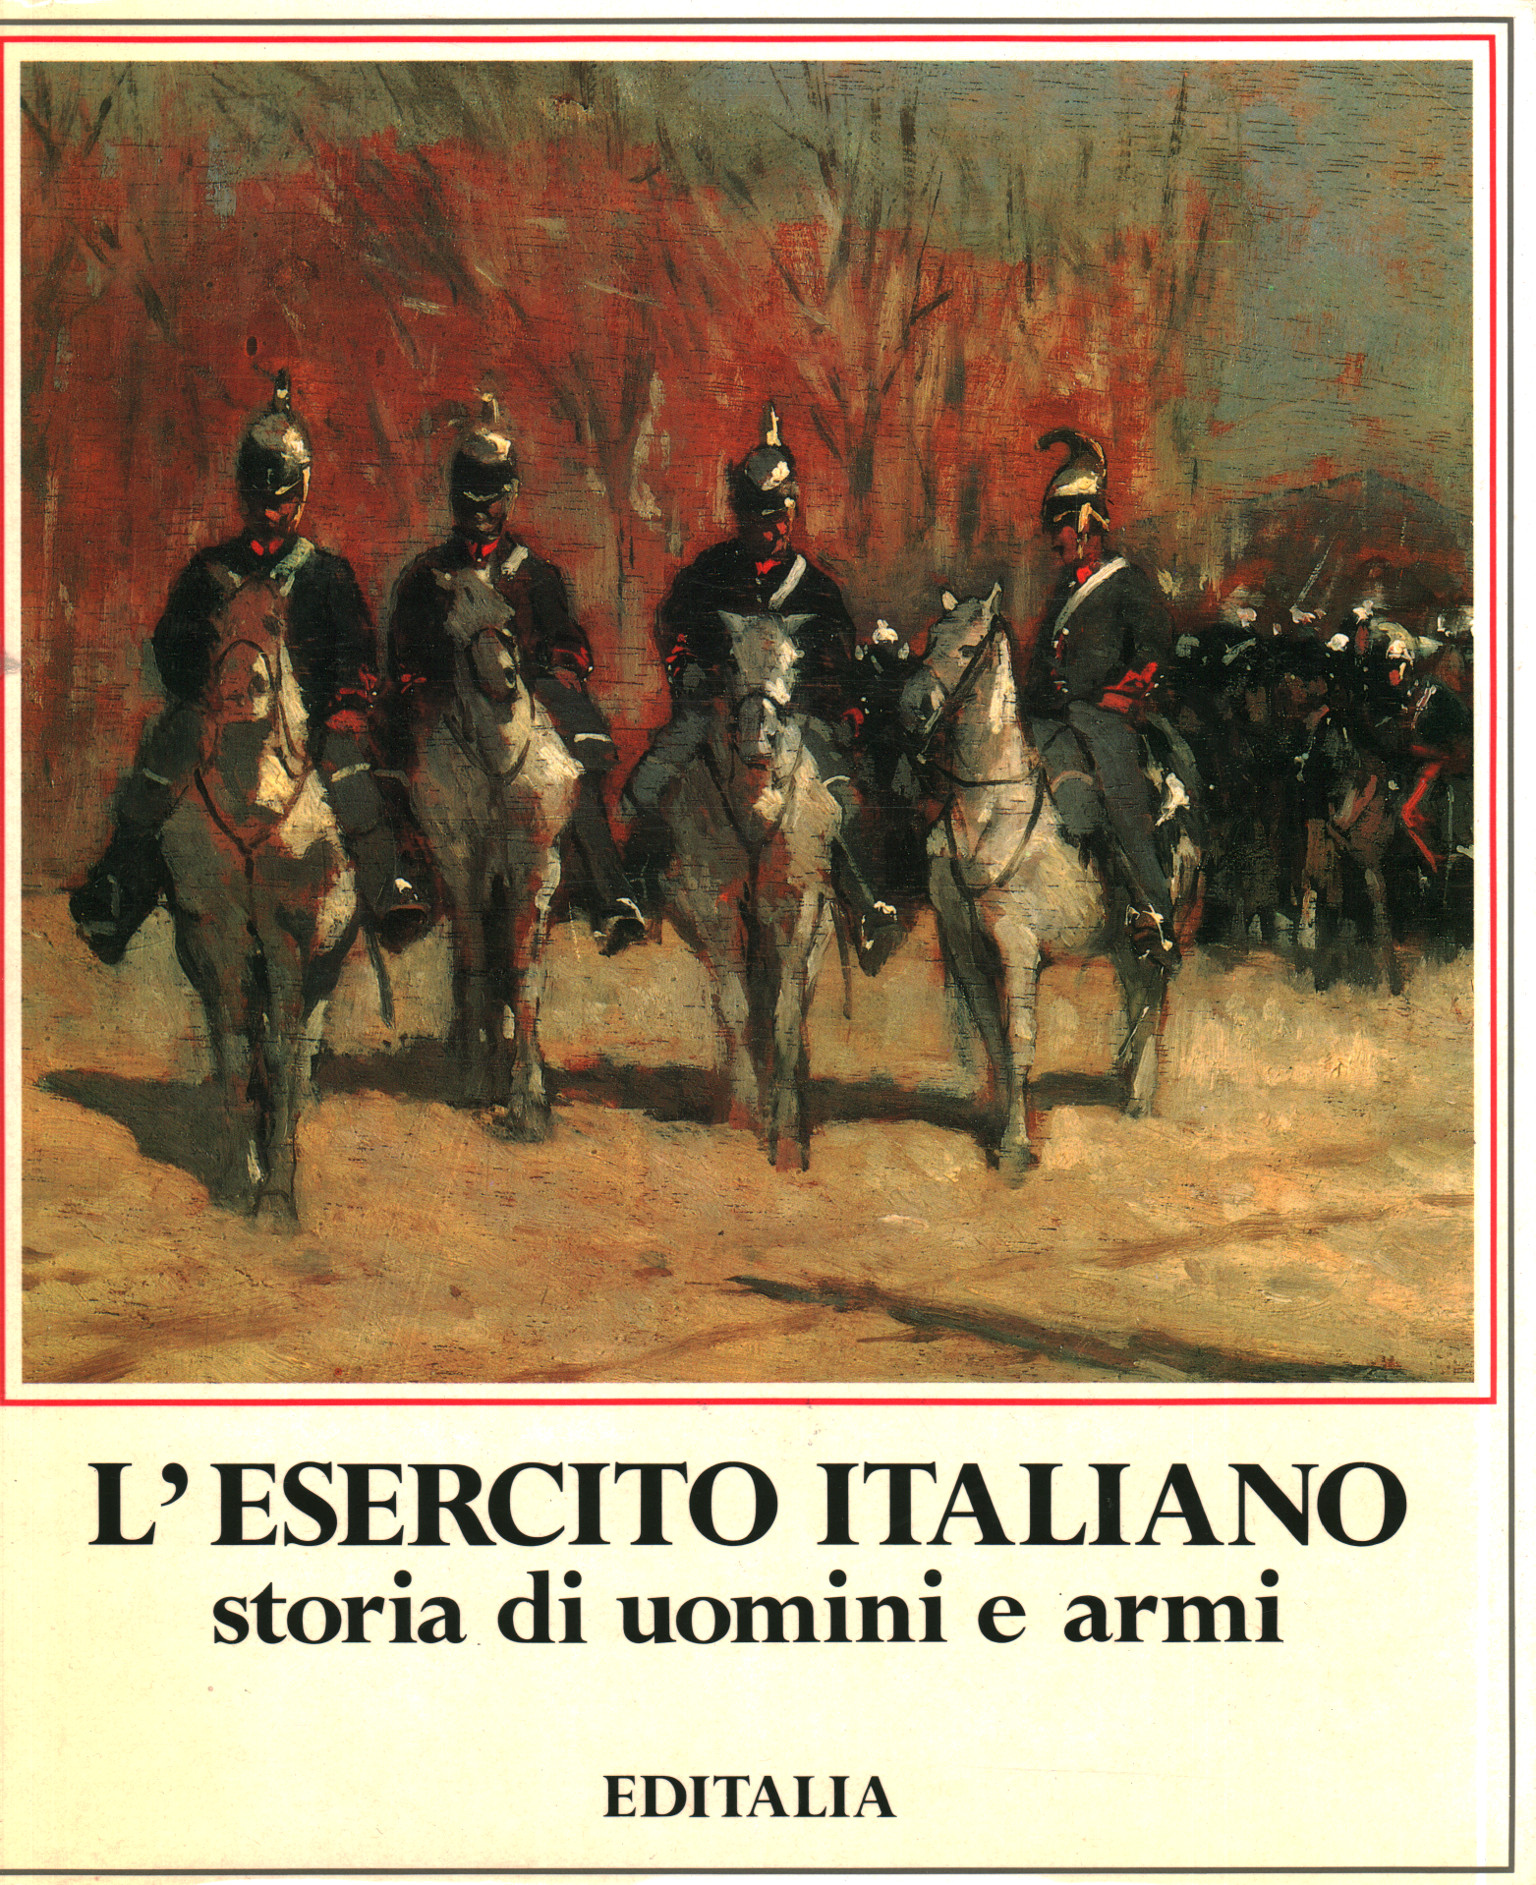 La historia del ejército italiano de hombres y armas, Arrigo Pecchioli